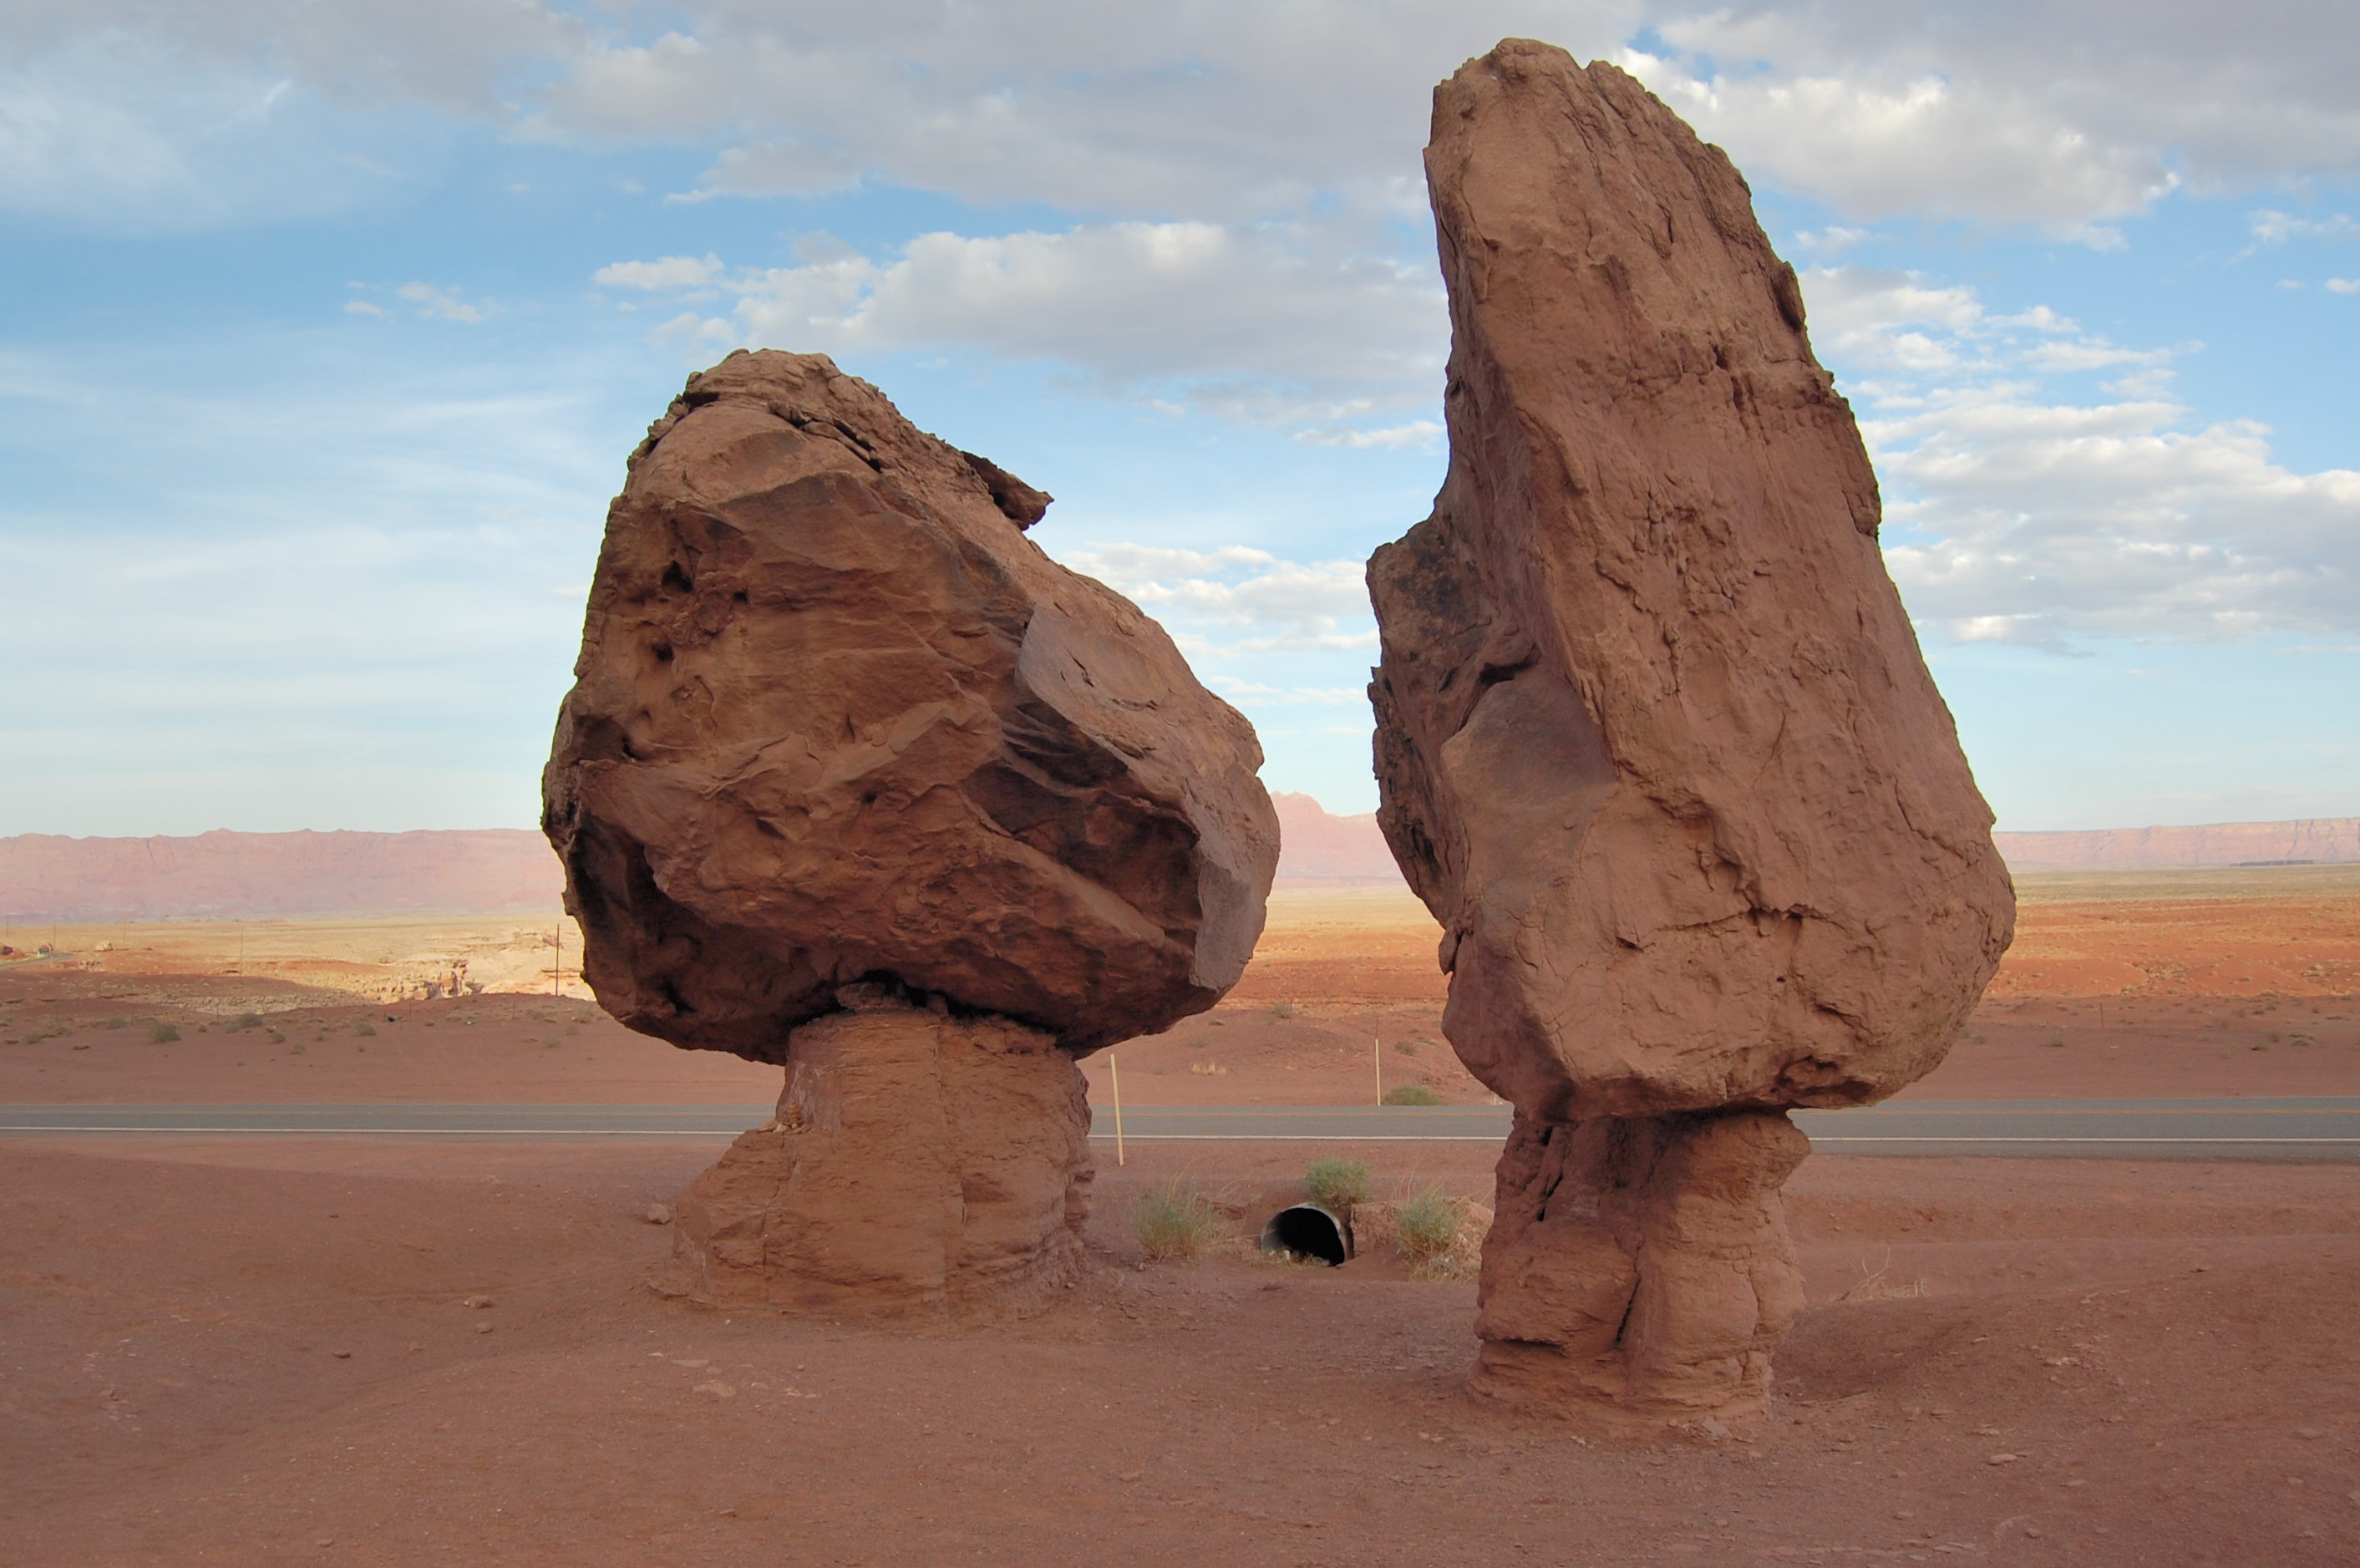 Giant fossilized Mushrooms or balanced giant rocks, Hwy 89 Arizona ...